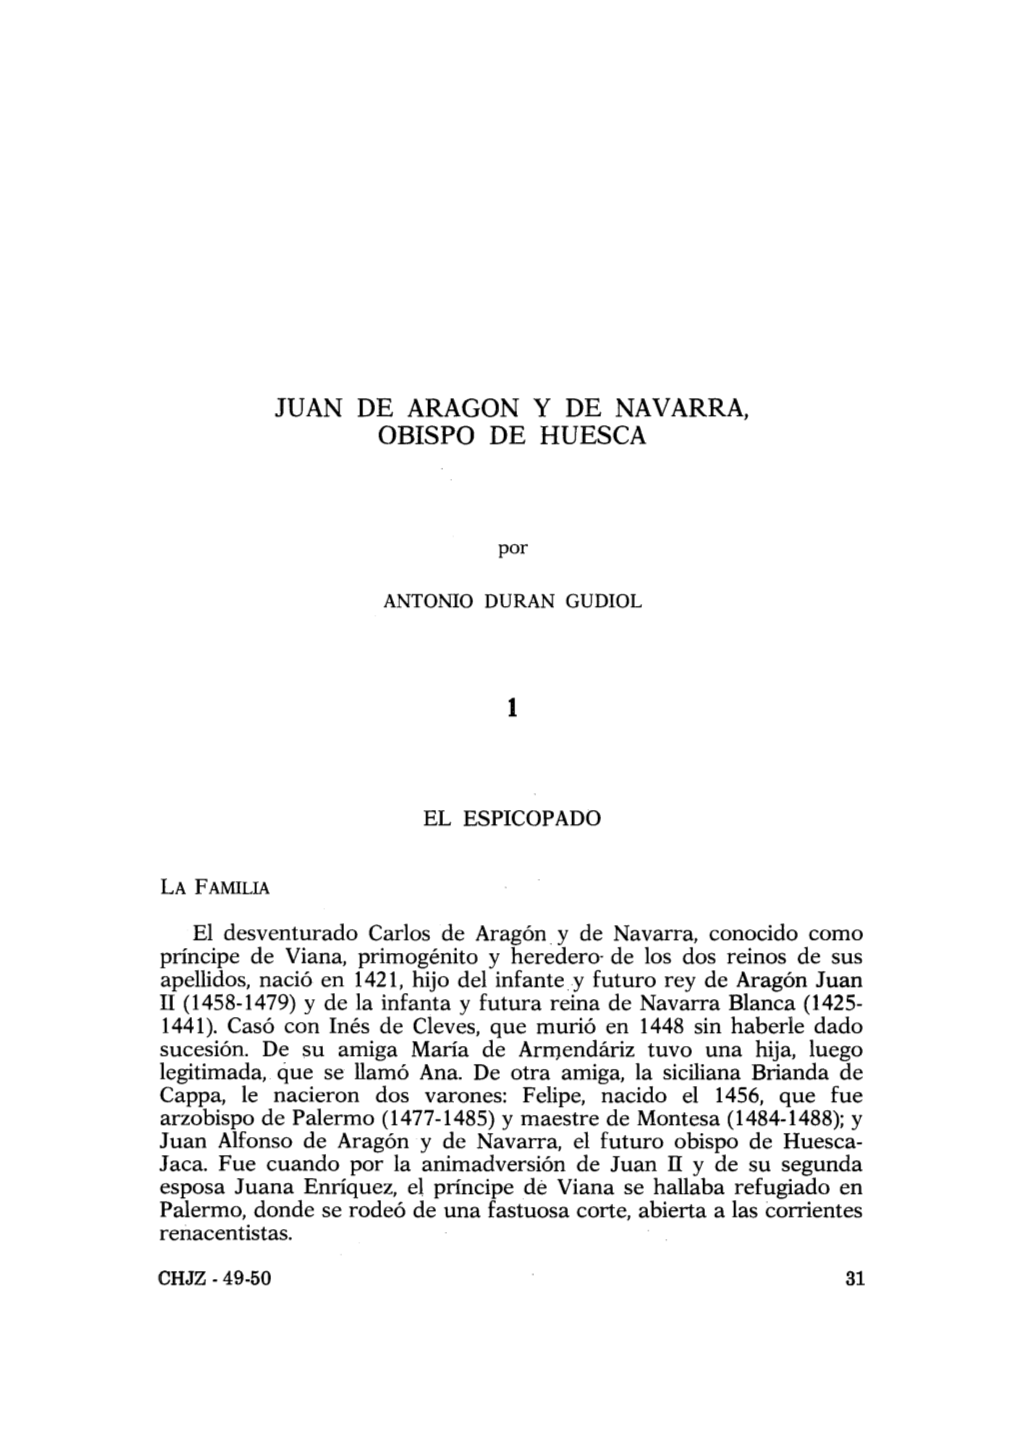 2. Juan De Aragón Y De Navarra, Obispo De Huesca, Por Antonio